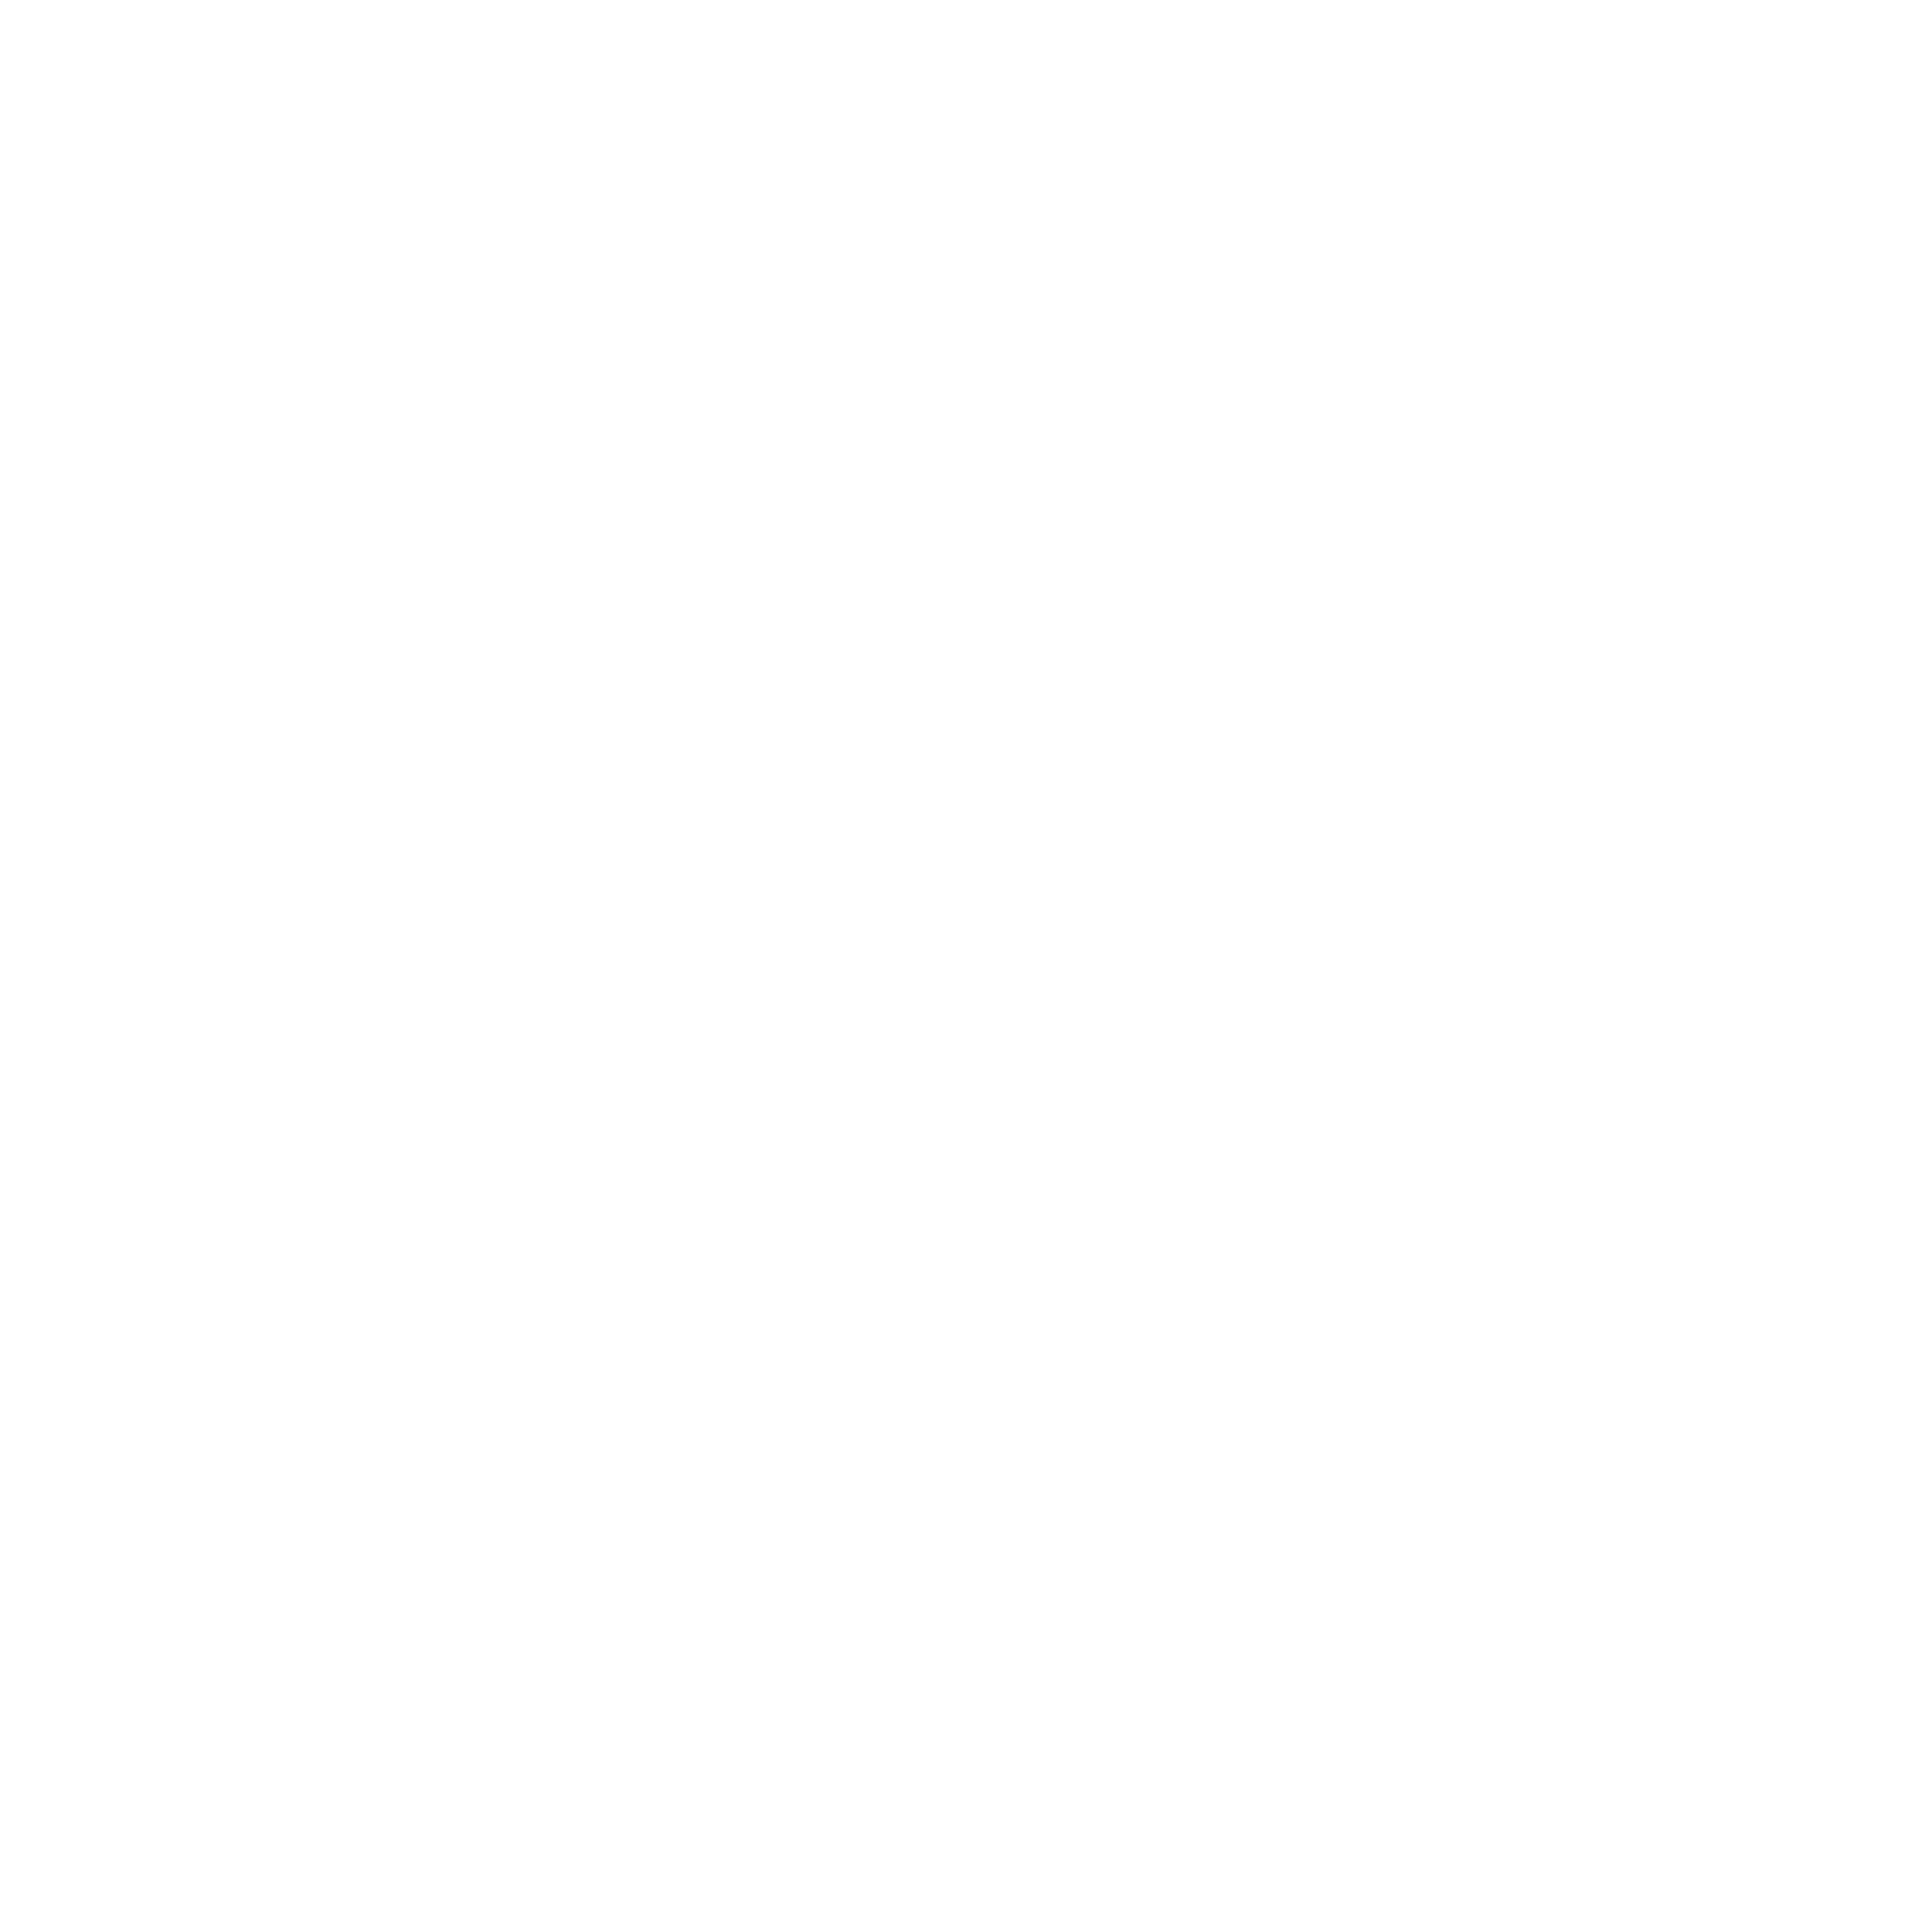 behance icon